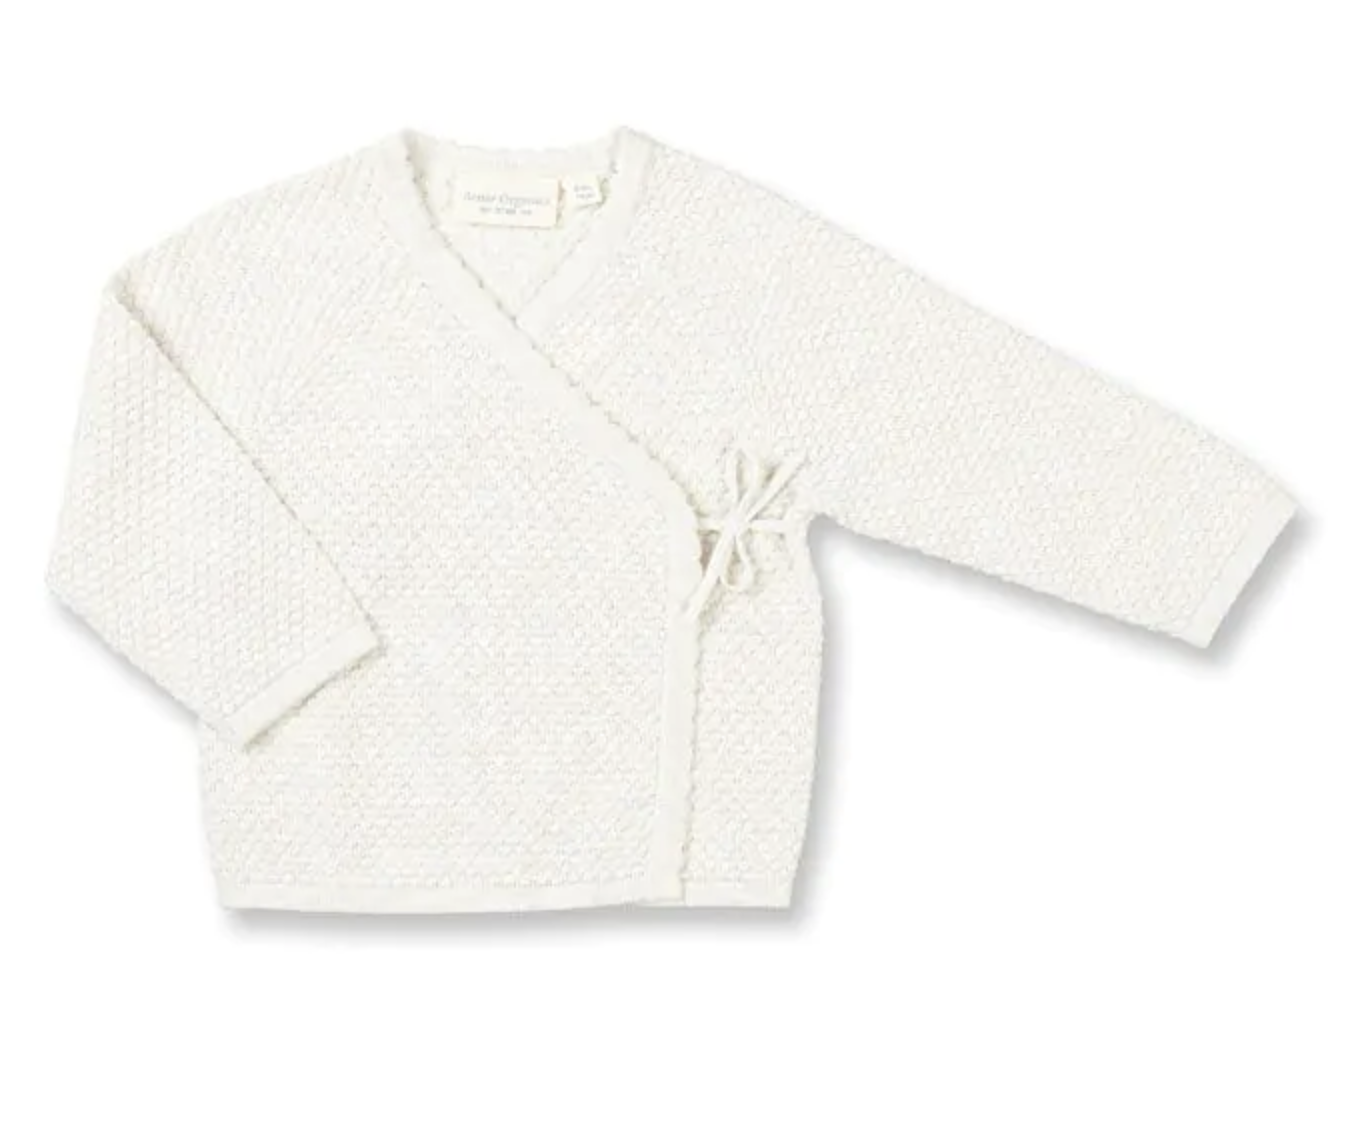 Sense Organics - gemütlicher Biobaumwollsweater